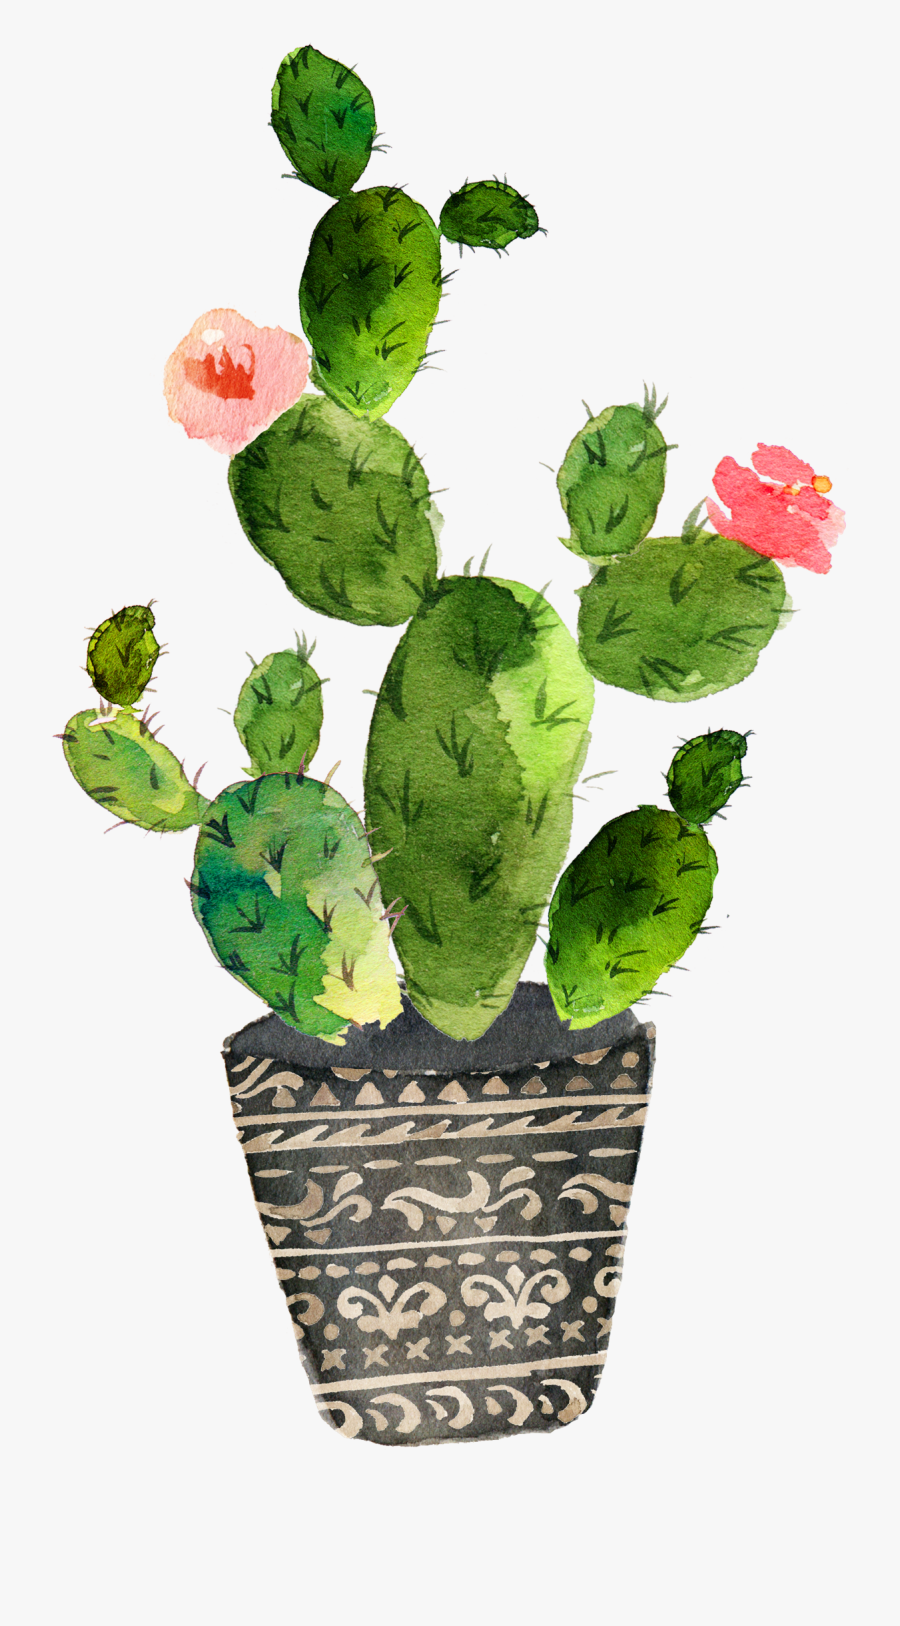 Watercolor Cactus Png - Watercolor Kaktus , Free Transparent Clipart